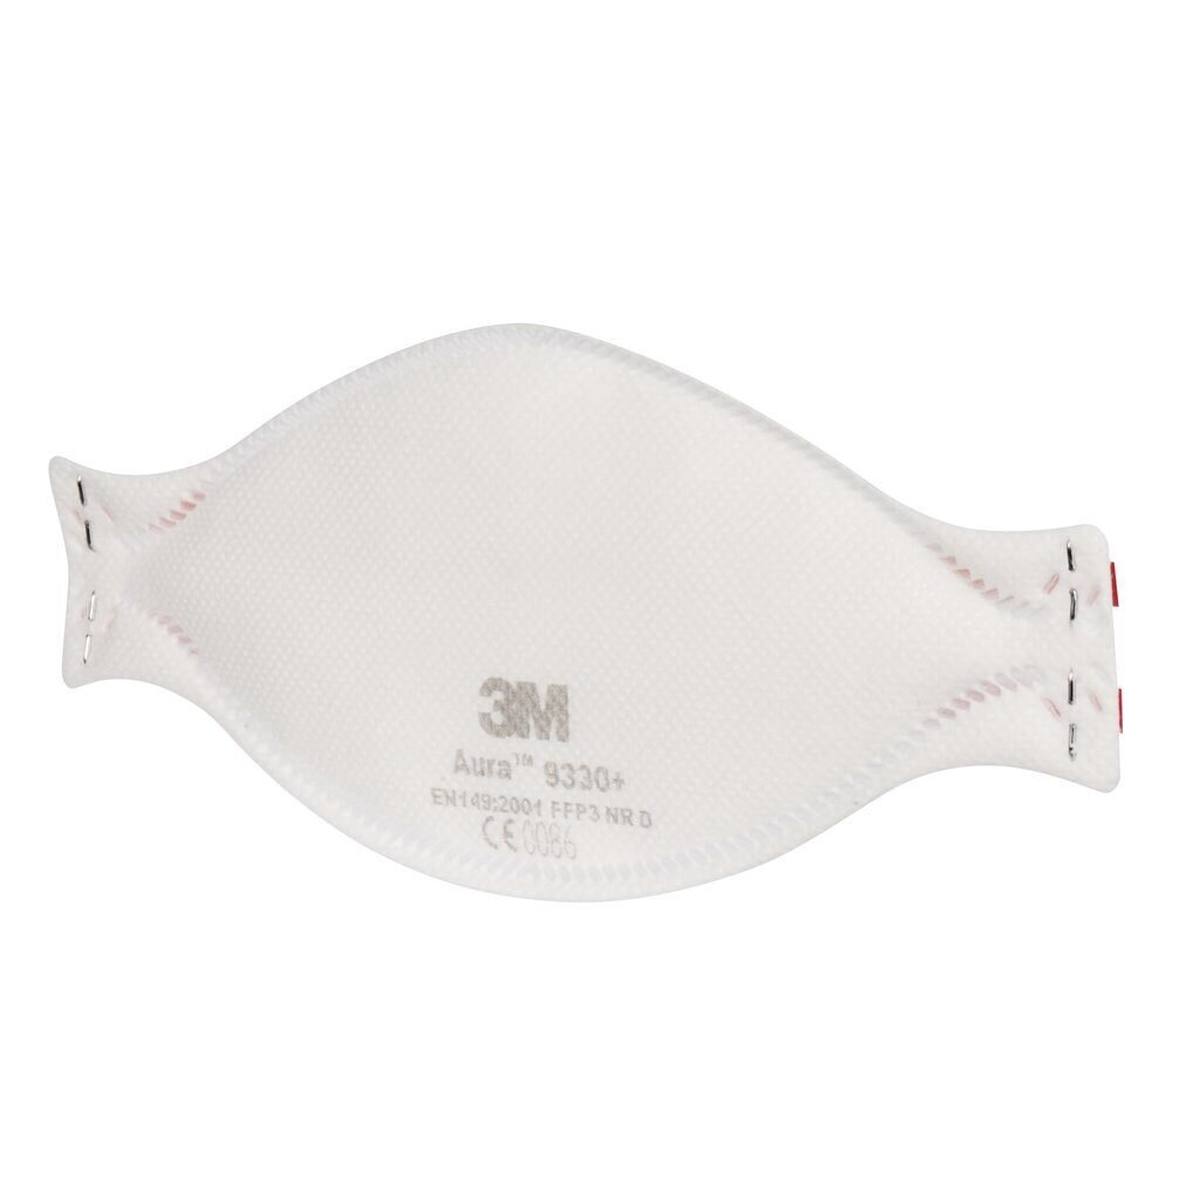 3M 9330 Aura Masque de protection respiratoire FFP3, jusqu'à 30 fois la valeur limite (emballage individuel hygiénique)